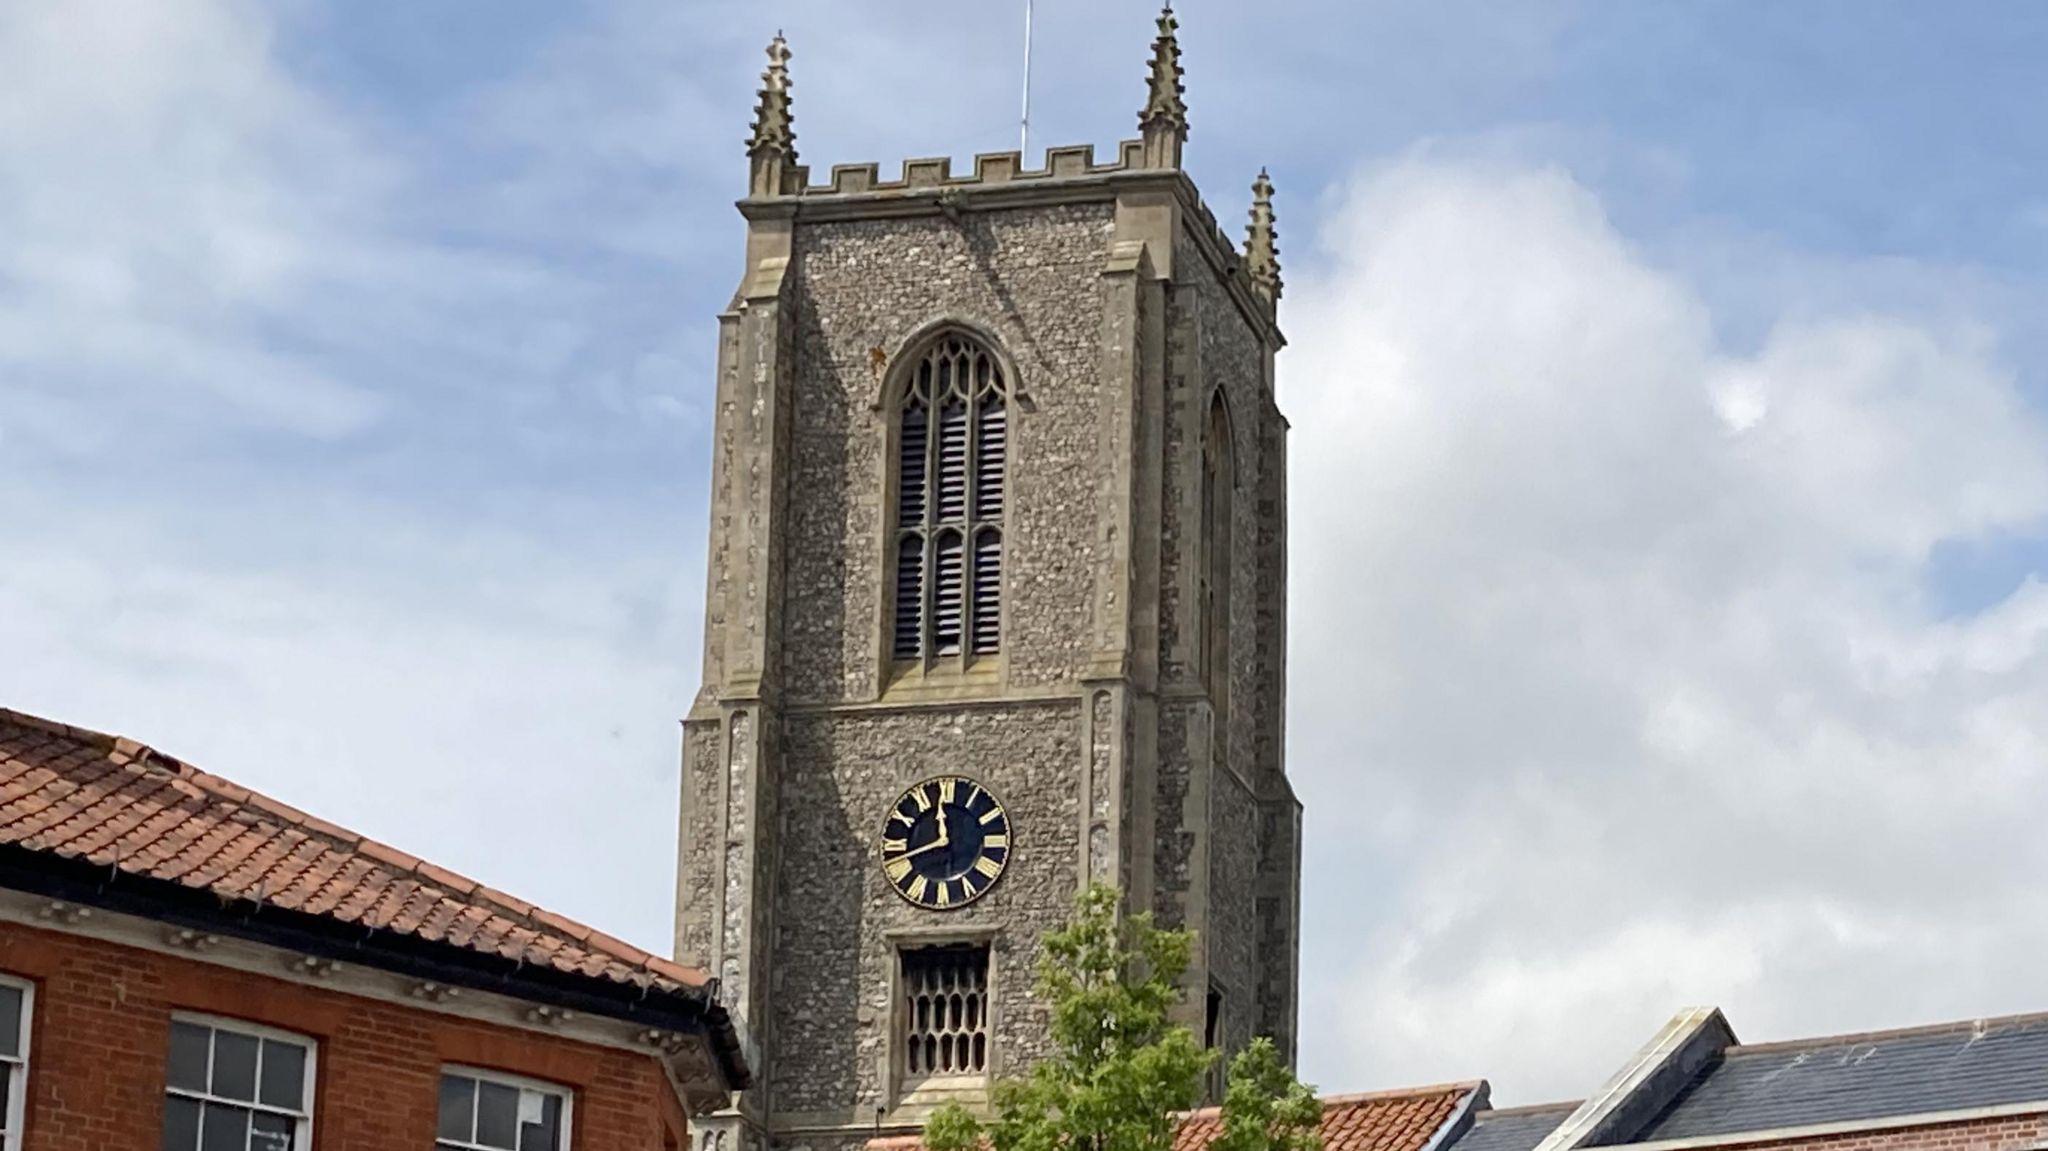 Fakenham clock tower